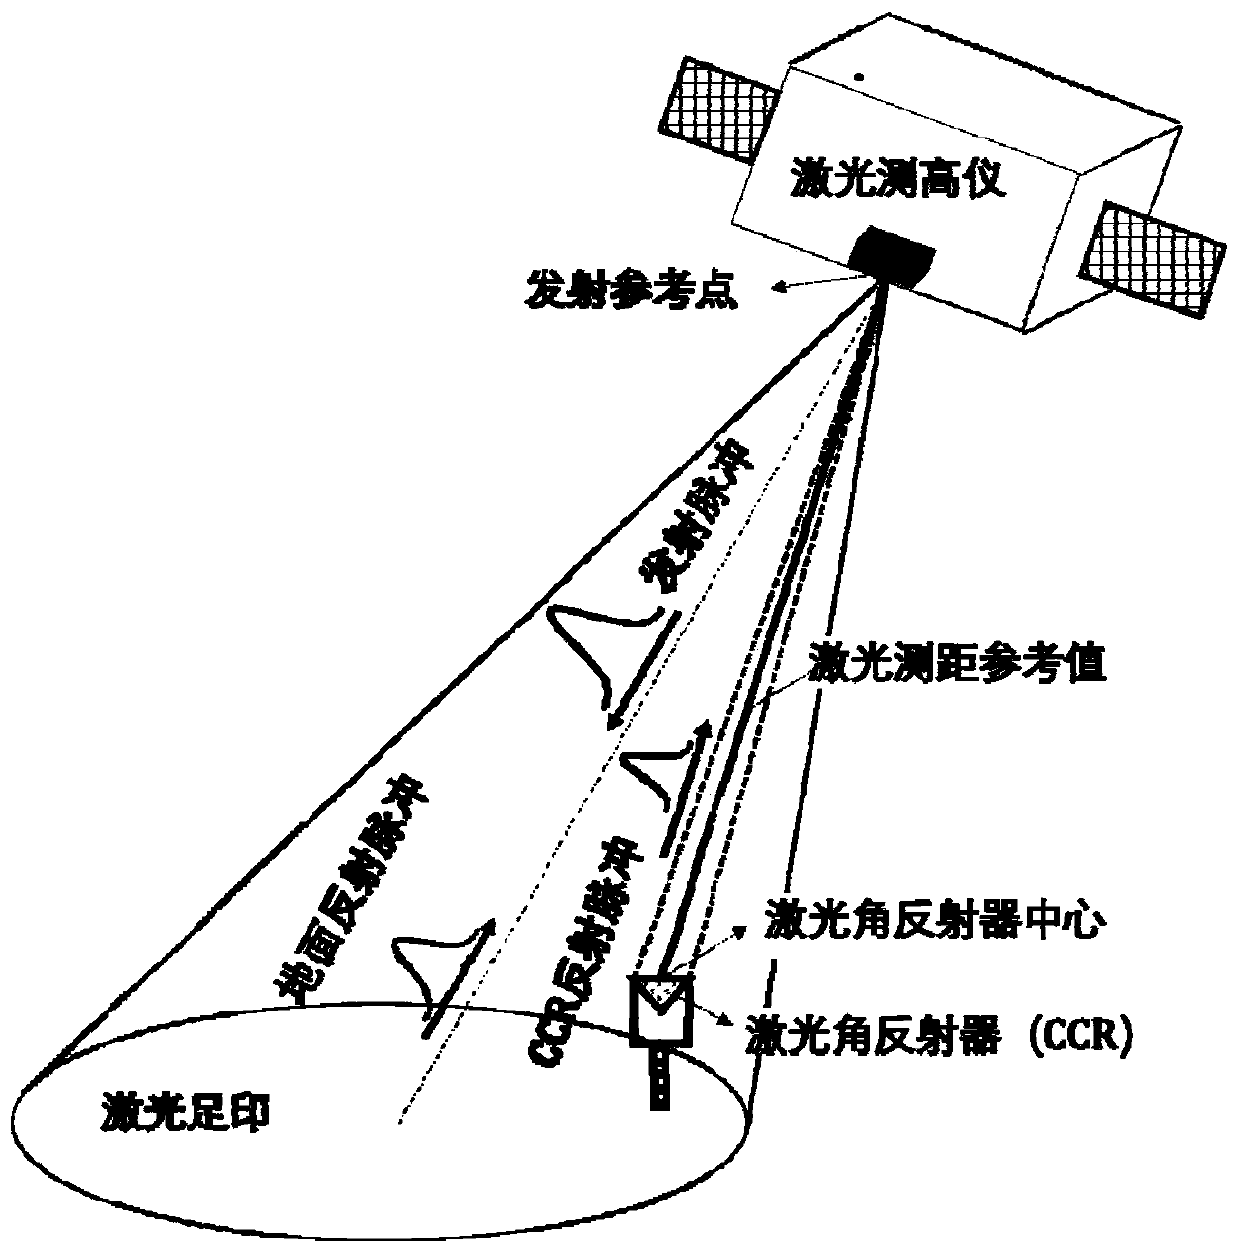 Laser corner reflector aperture optimization method for satellite-borne laser altimeter on-orbit calibration